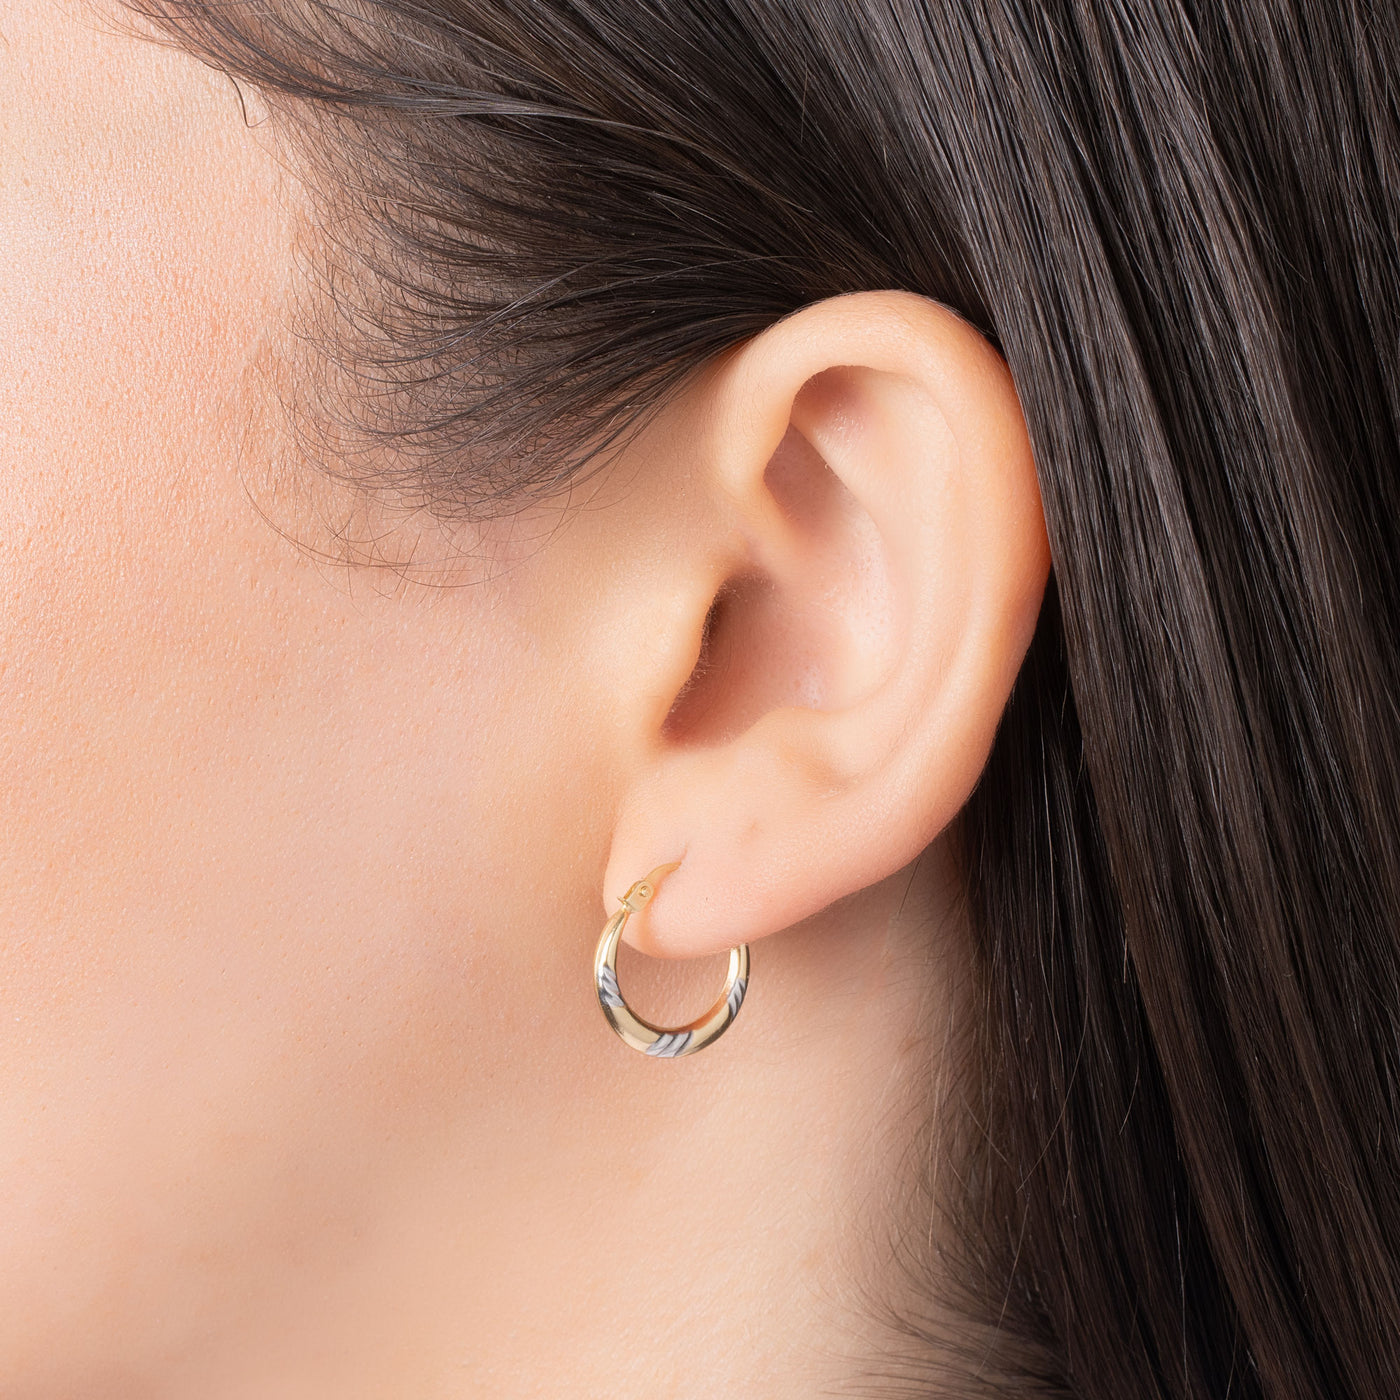 10K Gold Two Tone Lined Diamond Cut Hoop Earrings